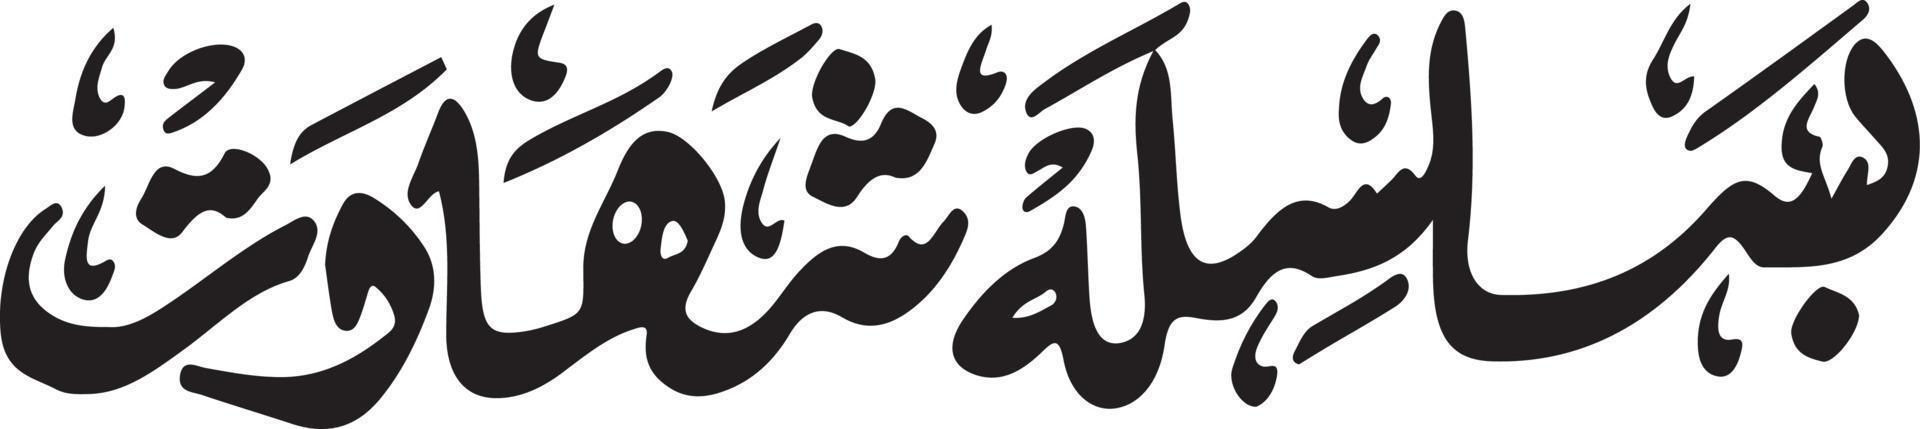 basilsla ombrato titolo islamico urdu Arabo calligrafia gratuito vettore